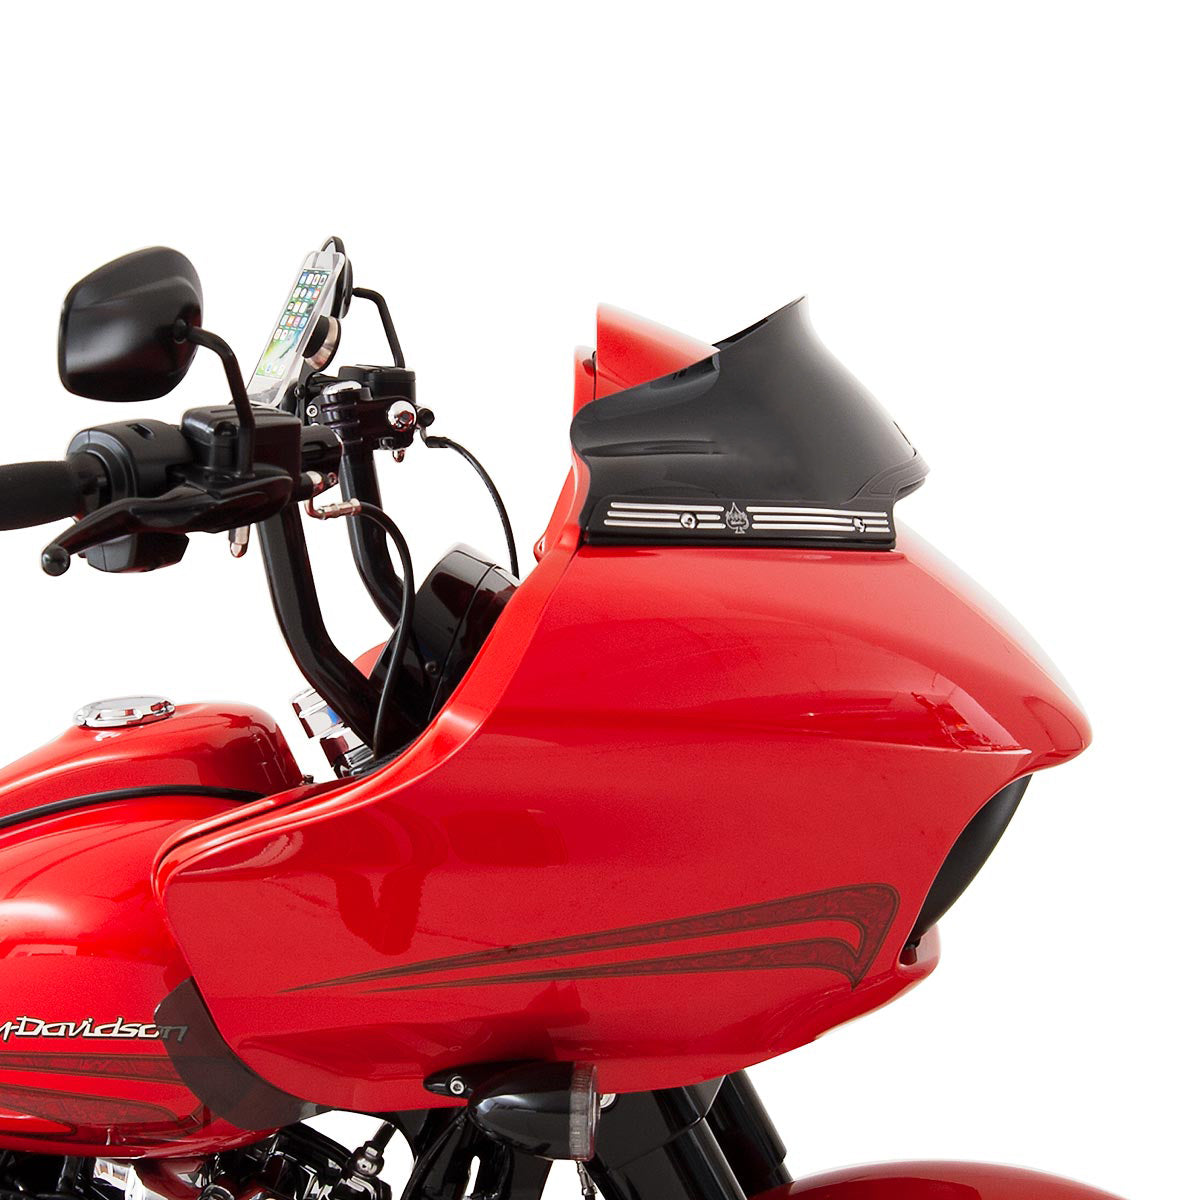 6" Sport Black Flare™ Windshields for Harley-Davidson 2015-2023 Road Glide motorcycle models shown on bike